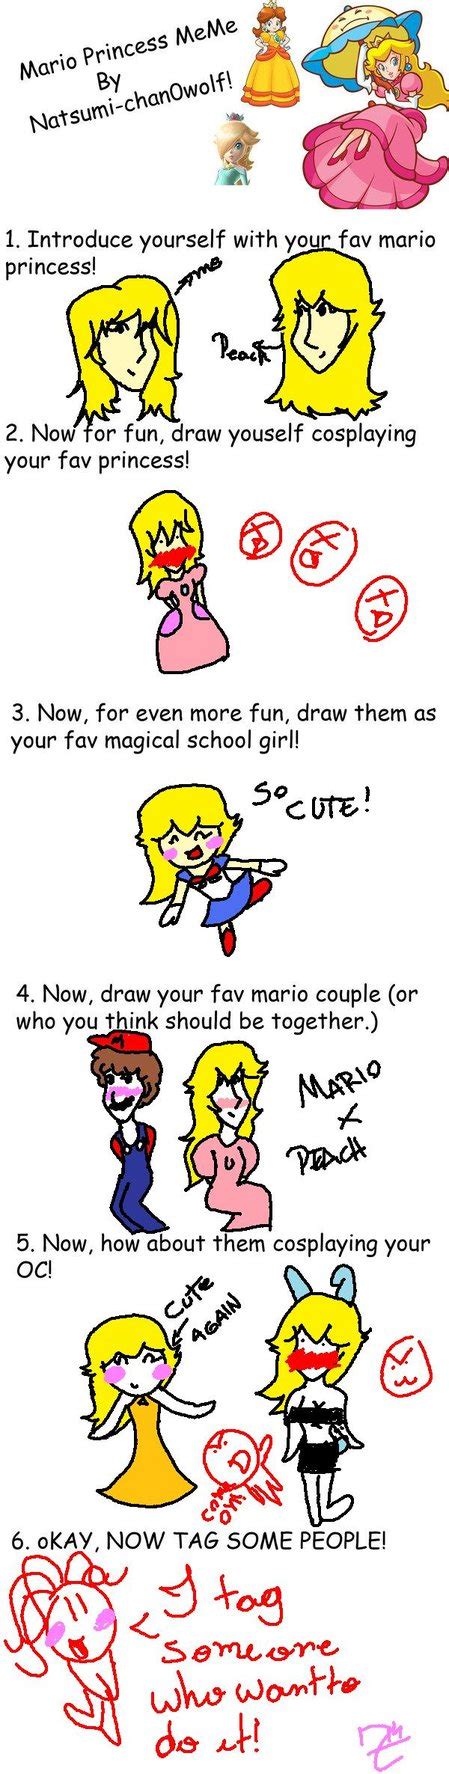 Princess Meme Mario Princess Meme By Zaza714 Princess Fashion Princess Style Princess Meme